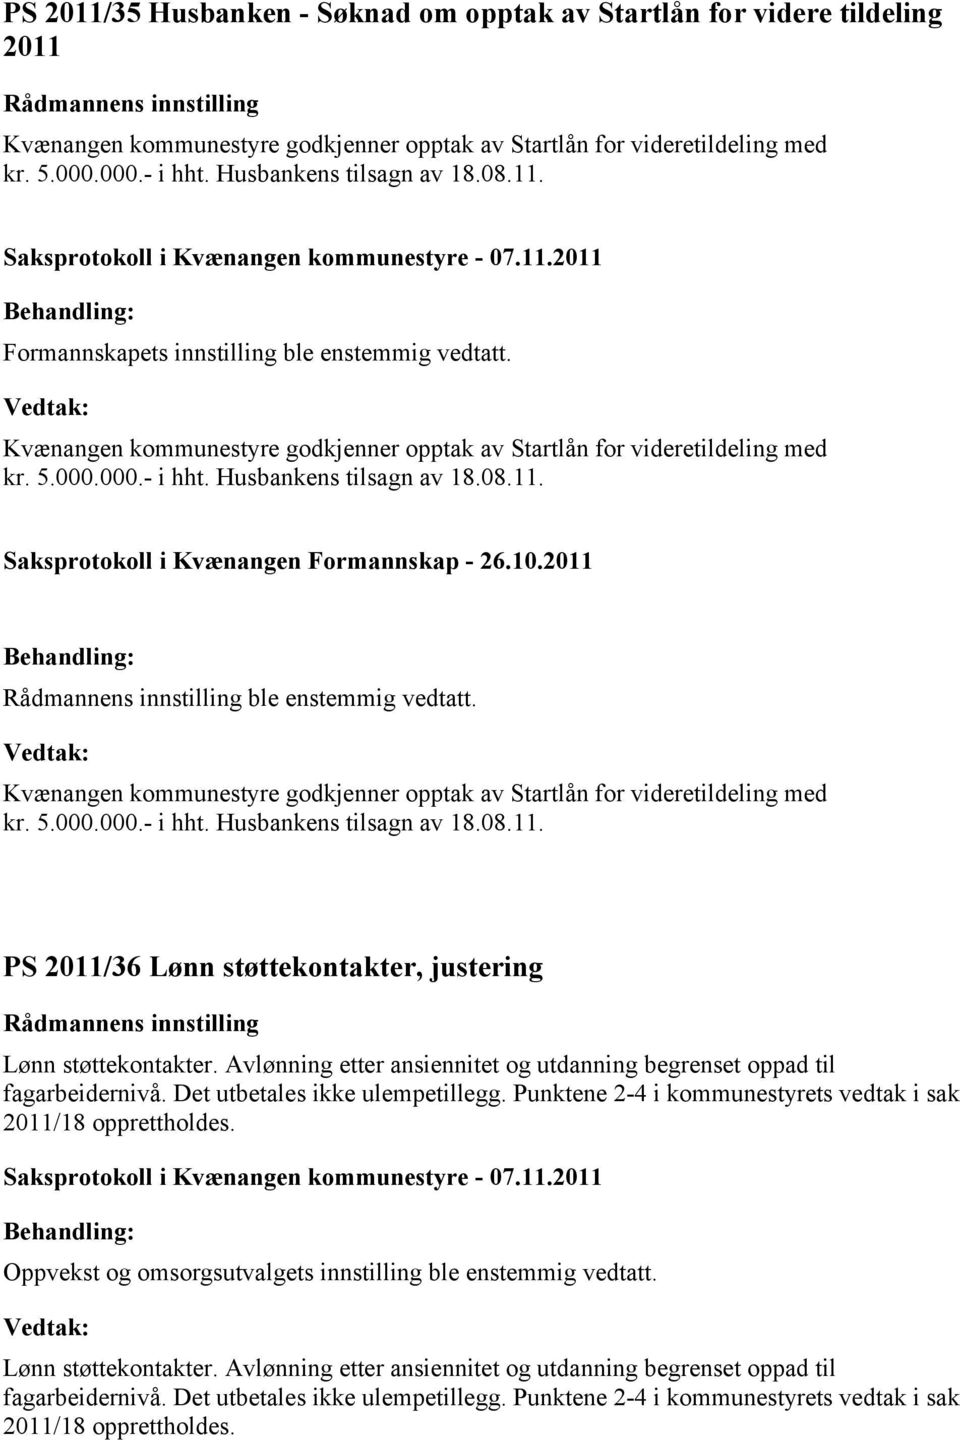 Husbankens tilsagn av 18.08.11. Saksprotokoll i Kvænangen Formannskap - 26.10.2011 ble enstemmig vedtatt. Kvænangen kommunestyre godkjenner opptak av Startlån for videretildeling med kr. 5.000.